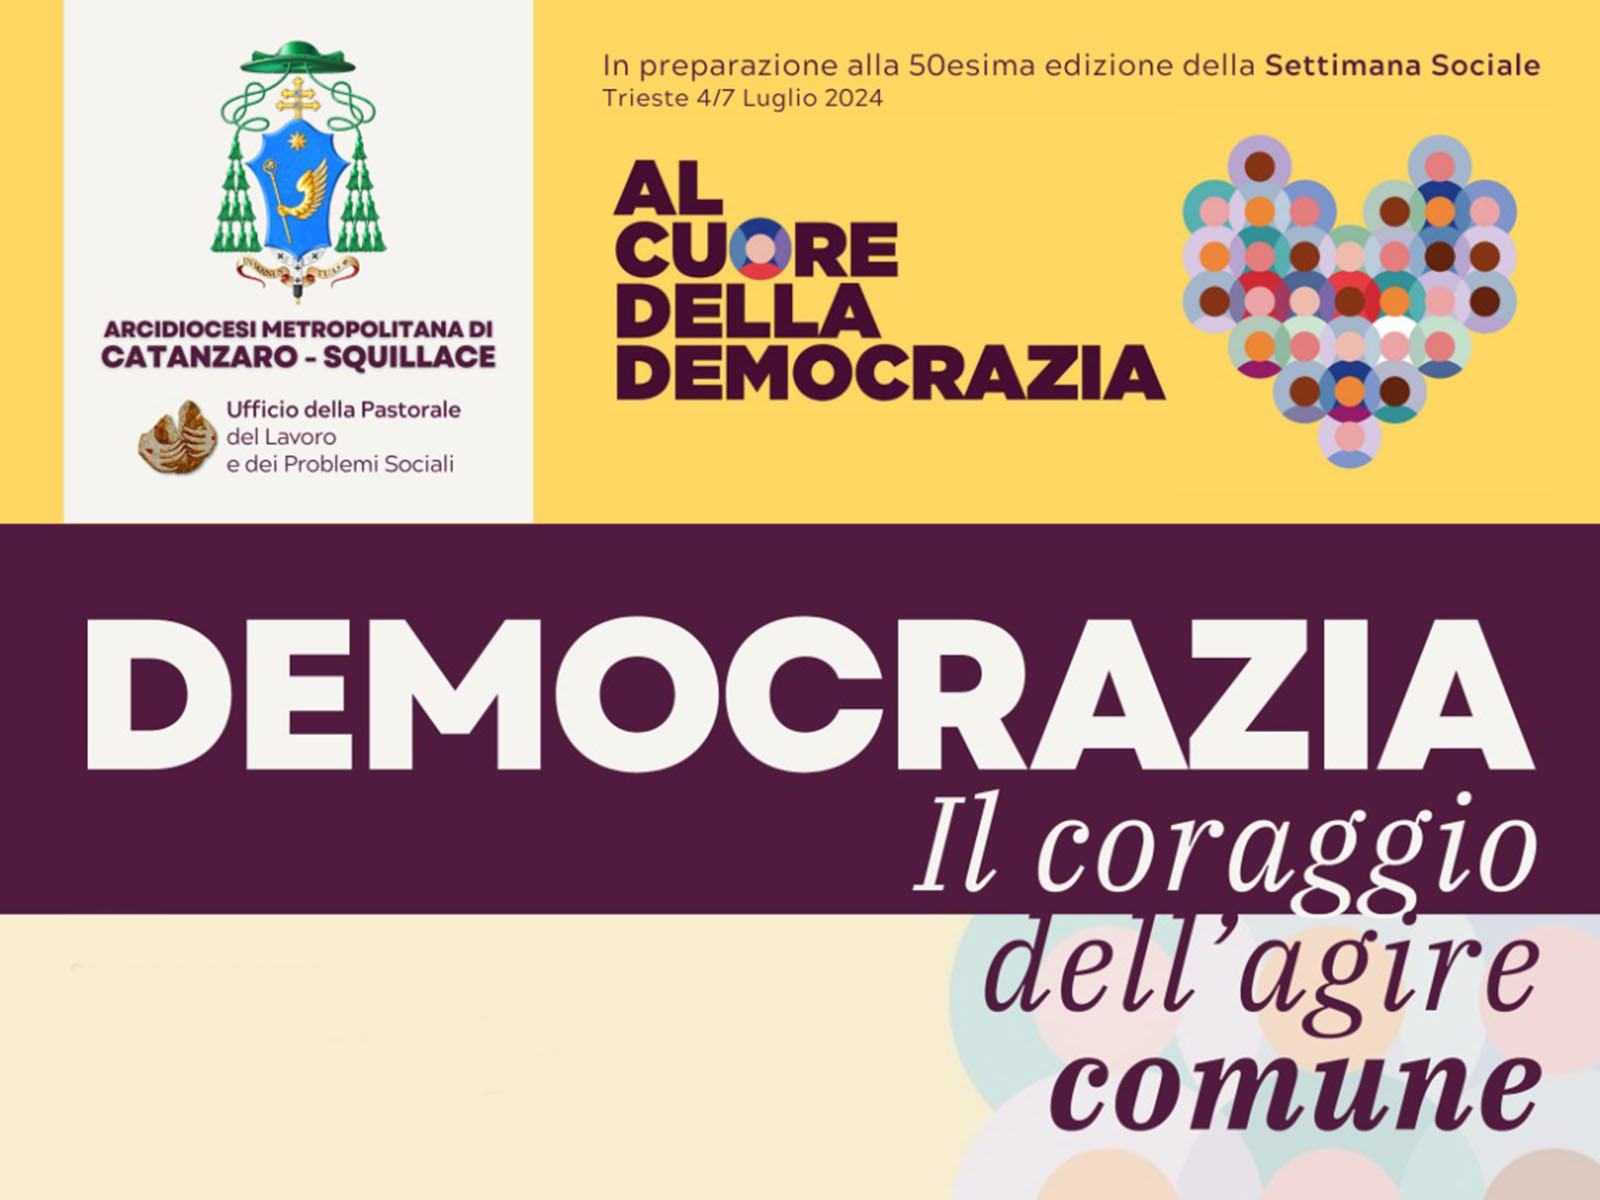 Anteprima dell'incontro che si terrà il 15 aprile 2024 verso la 50ª Settimana Sociale dei Cattolici in Italia